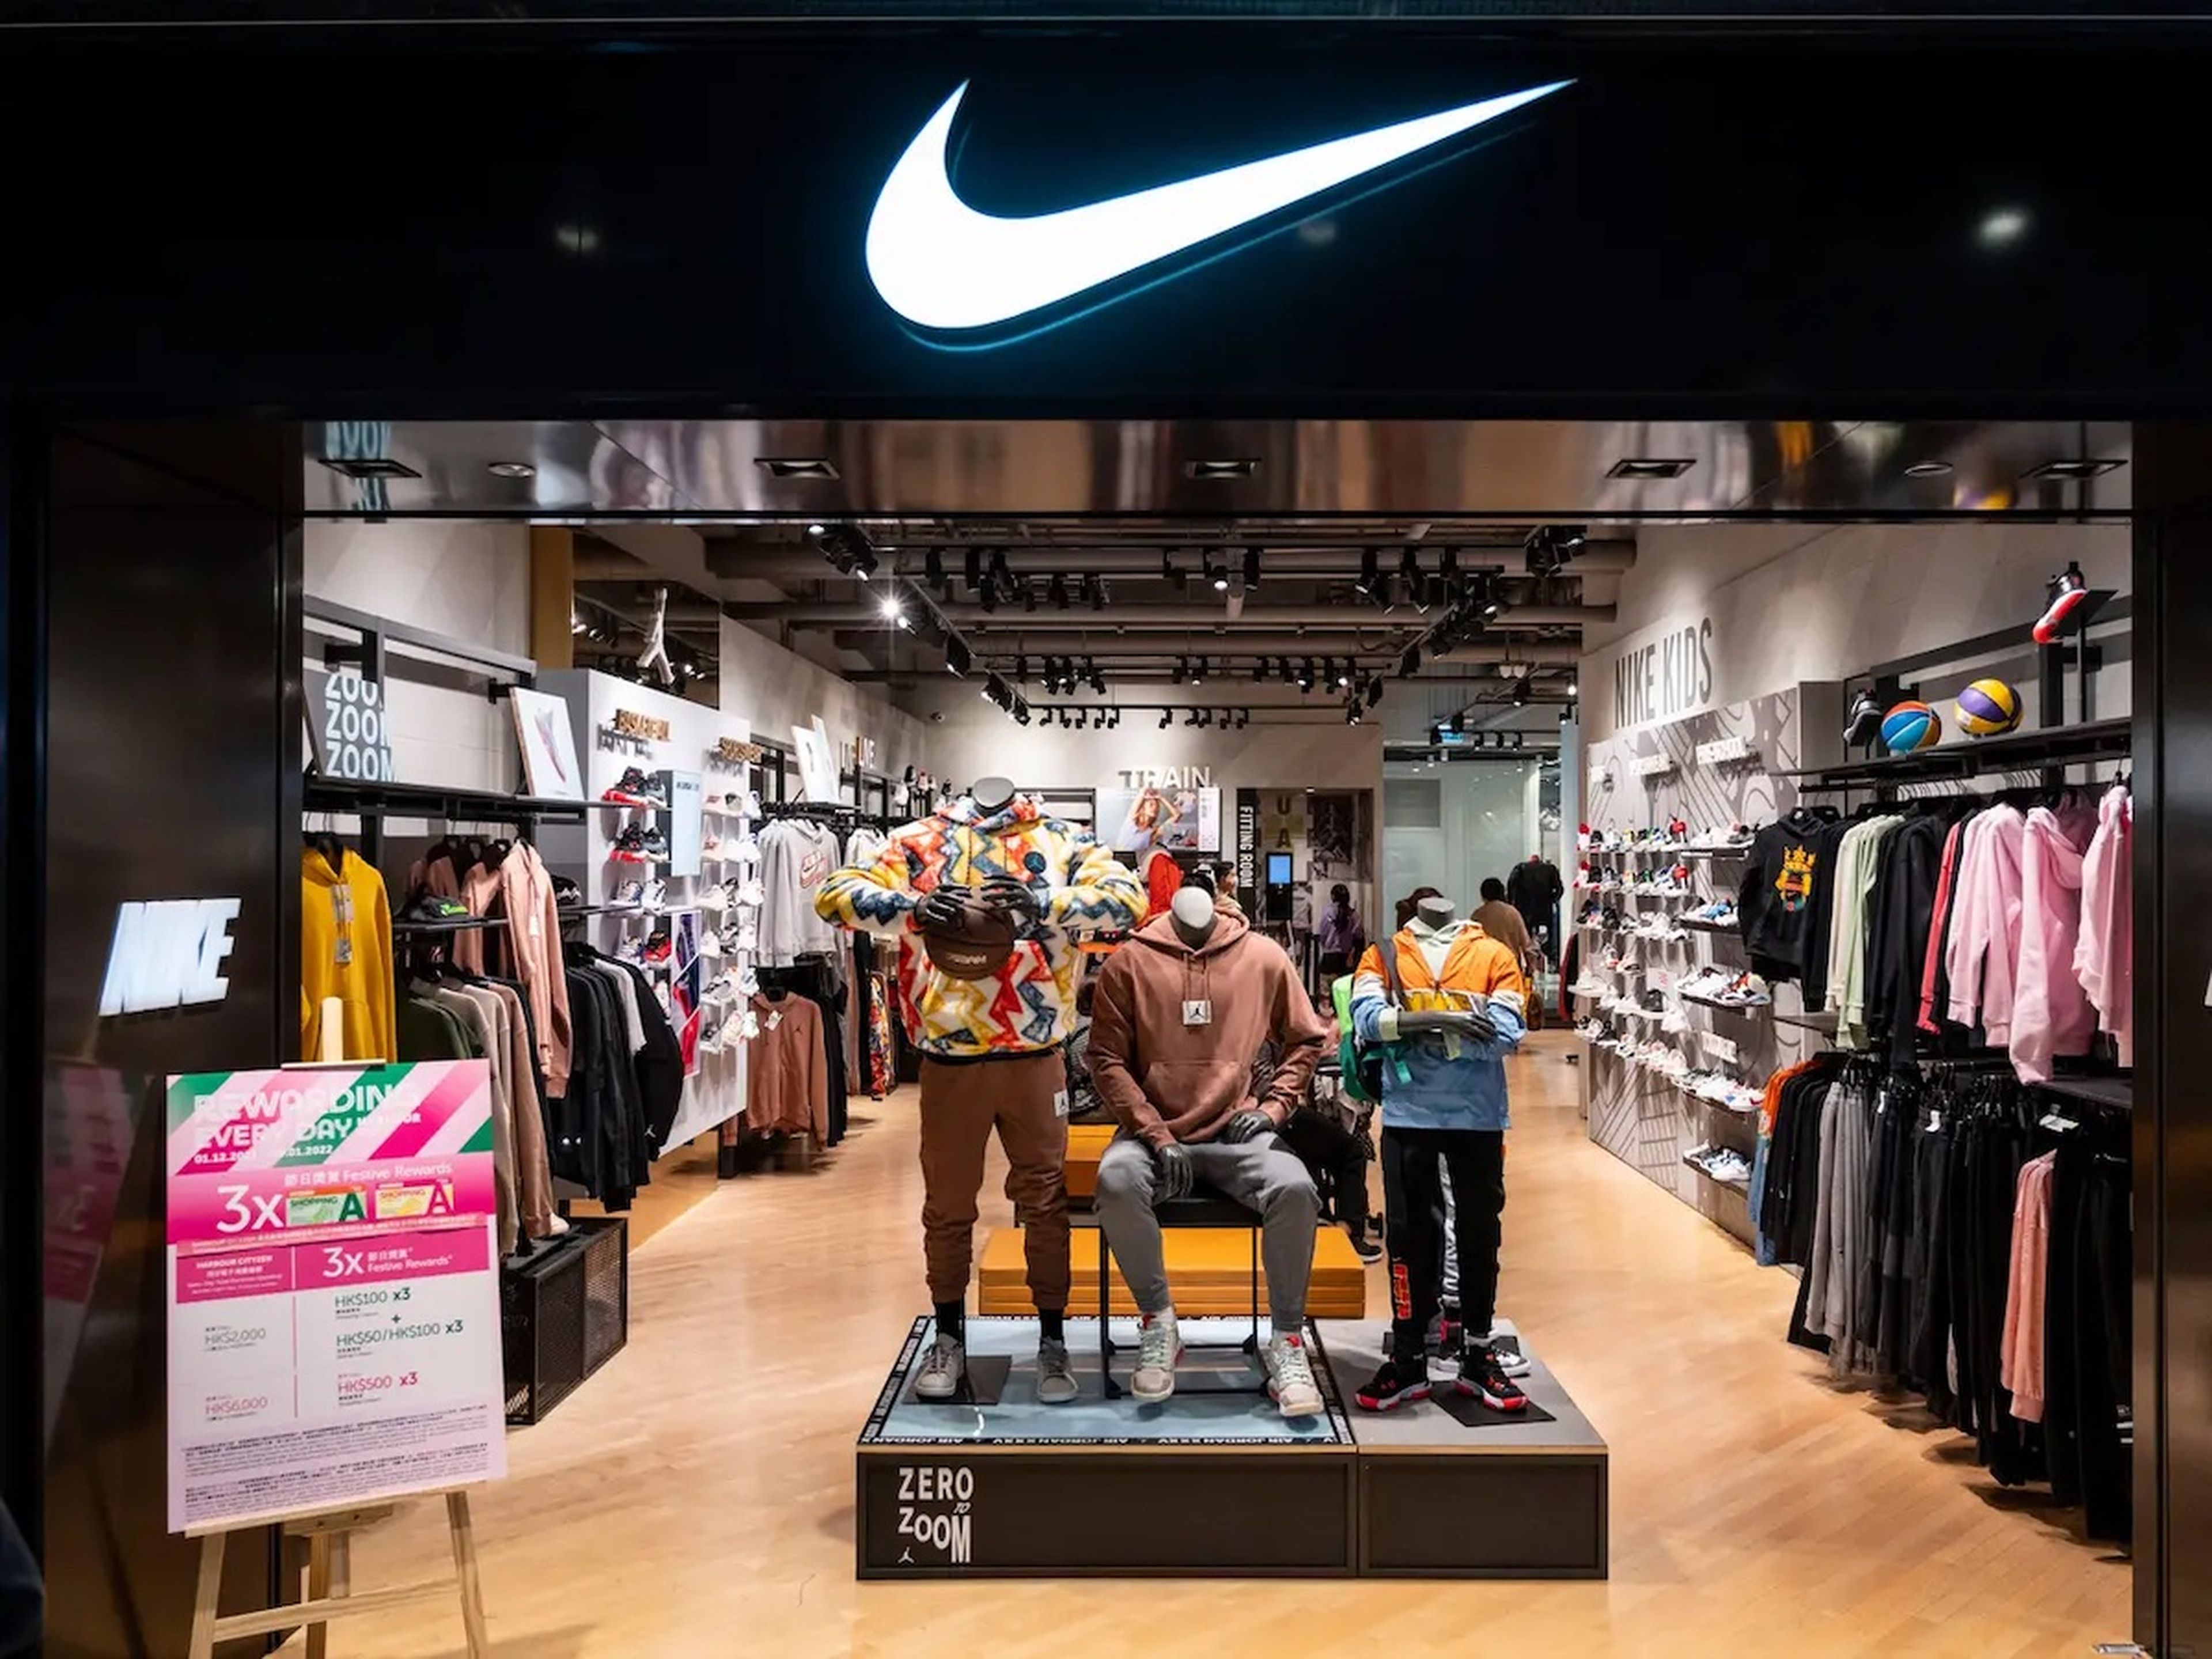 Una tienda Nike podría usarse ahora como centro de distribución.